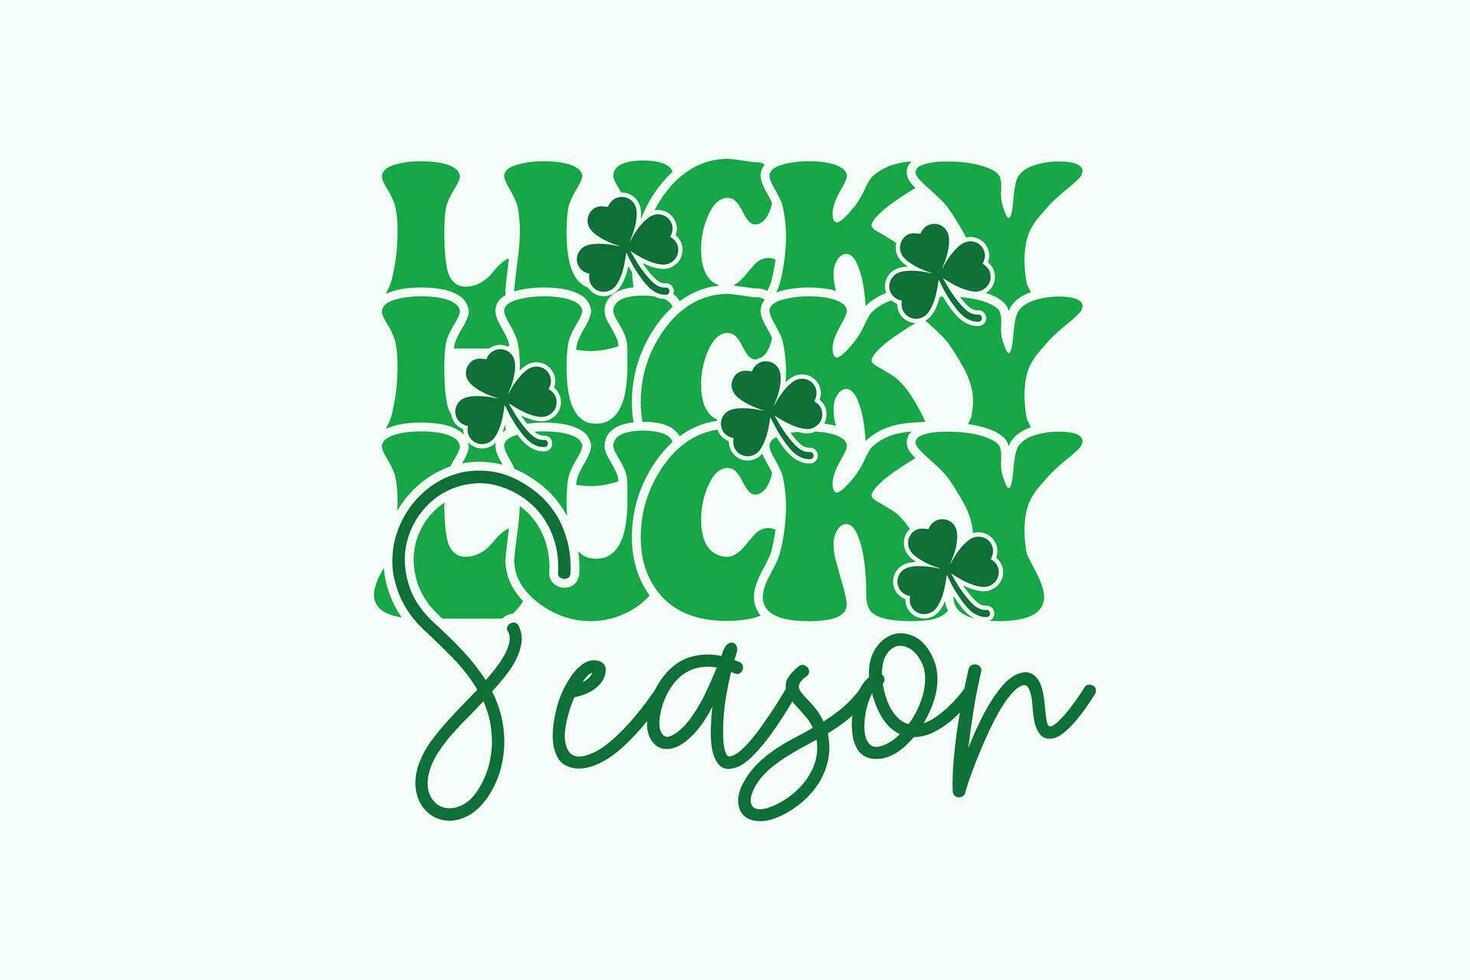 retro Lucky seizoen eps, st patricks dag t-shirt ontwerp. goed voor t overhemd afdrukken, poster, kaart, label, en andere decoartion voor st. Patrick dag vector